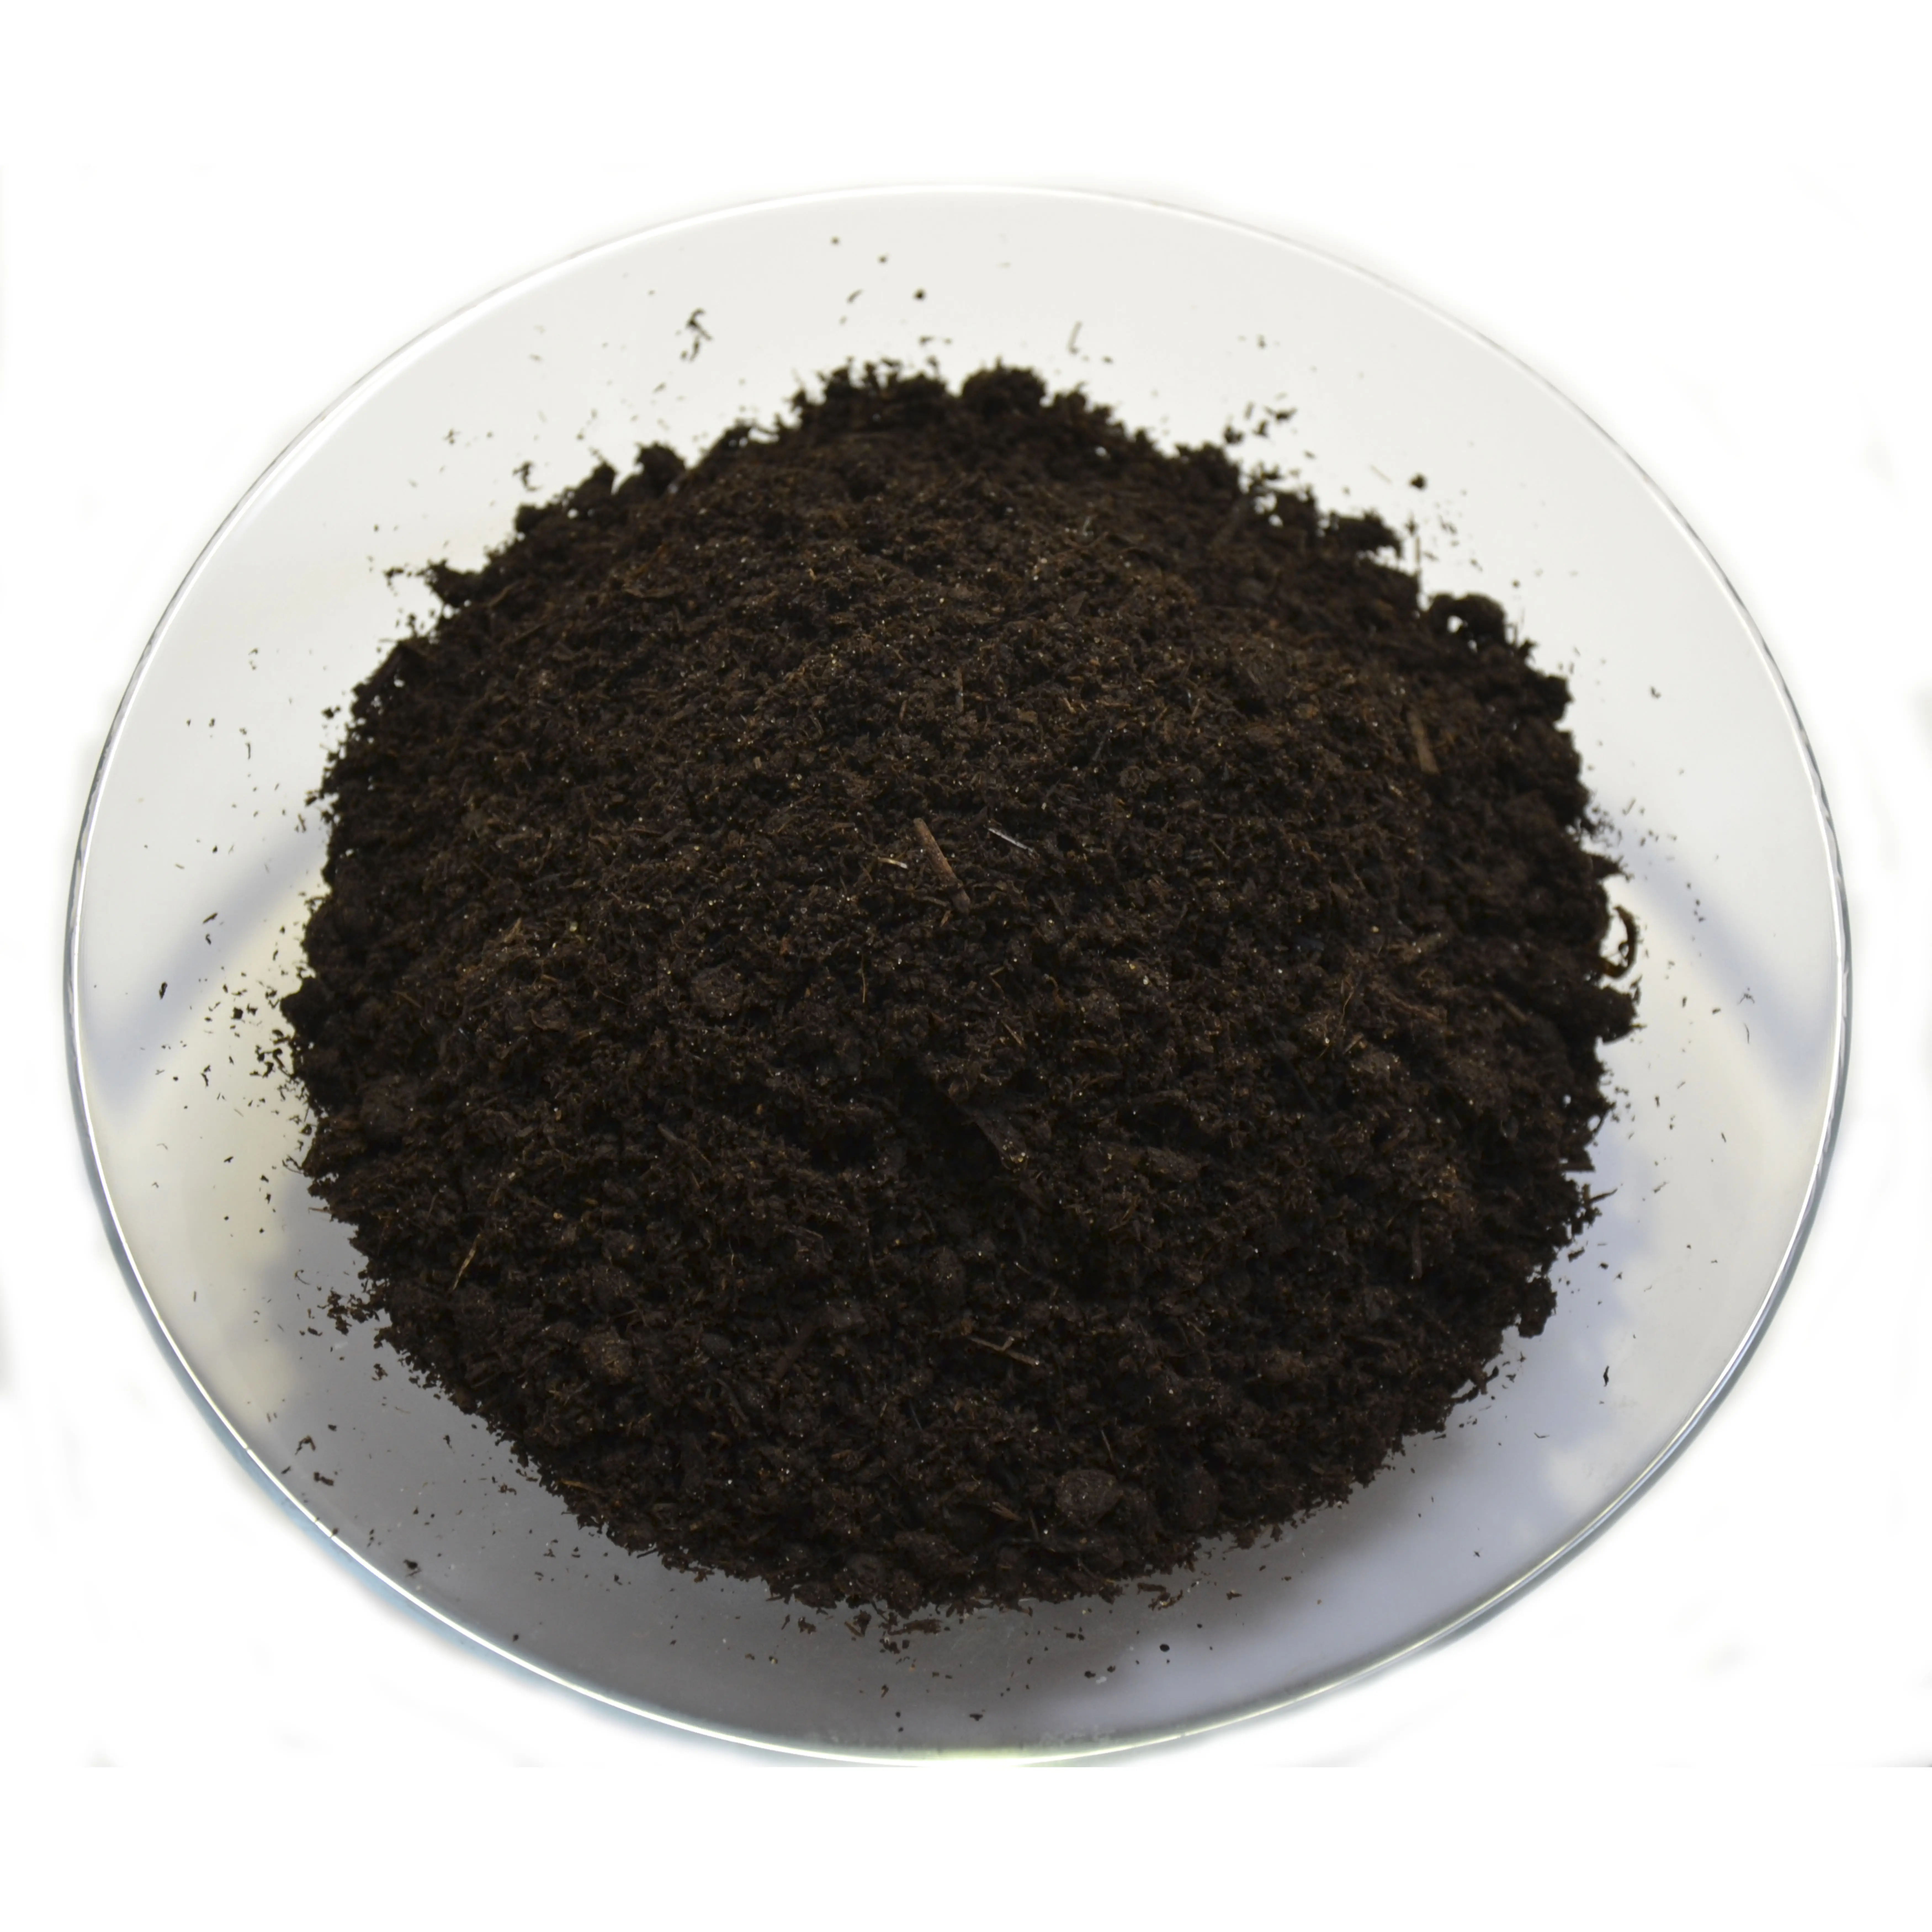 Bio fertilizer / worm compost